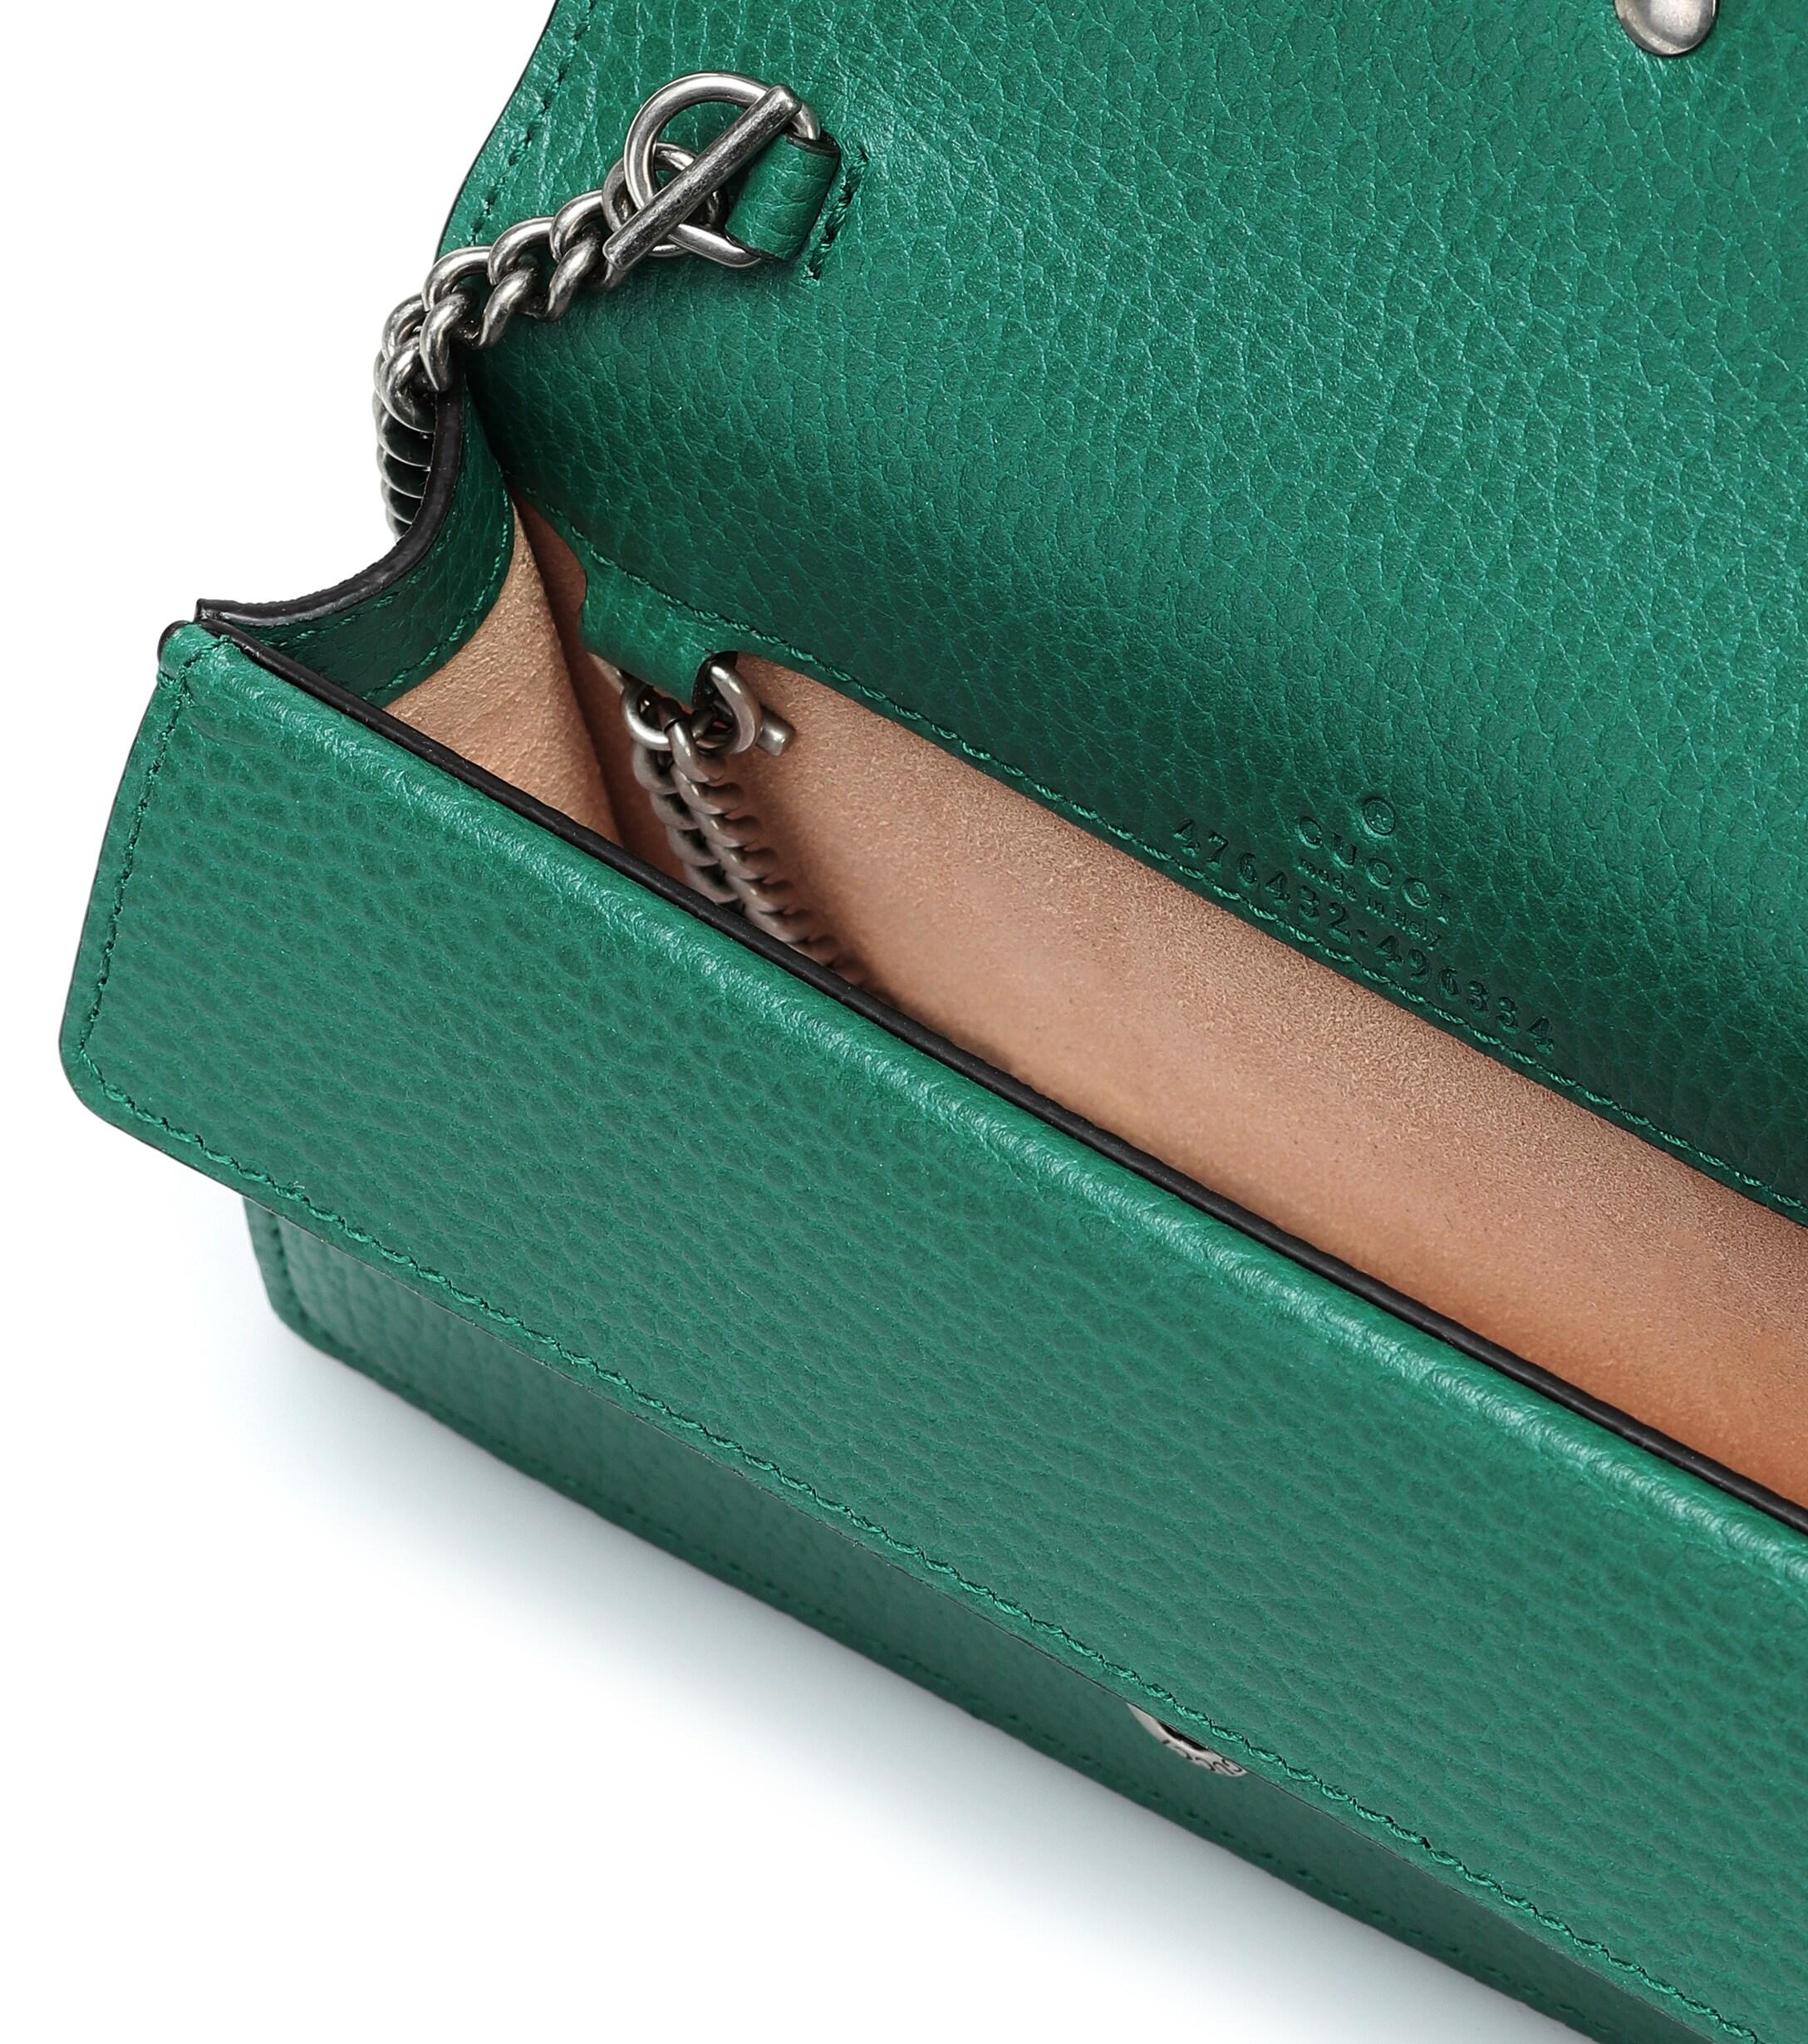 Gucci Dionysus Leather Super Mini Bag in Green - Lyst